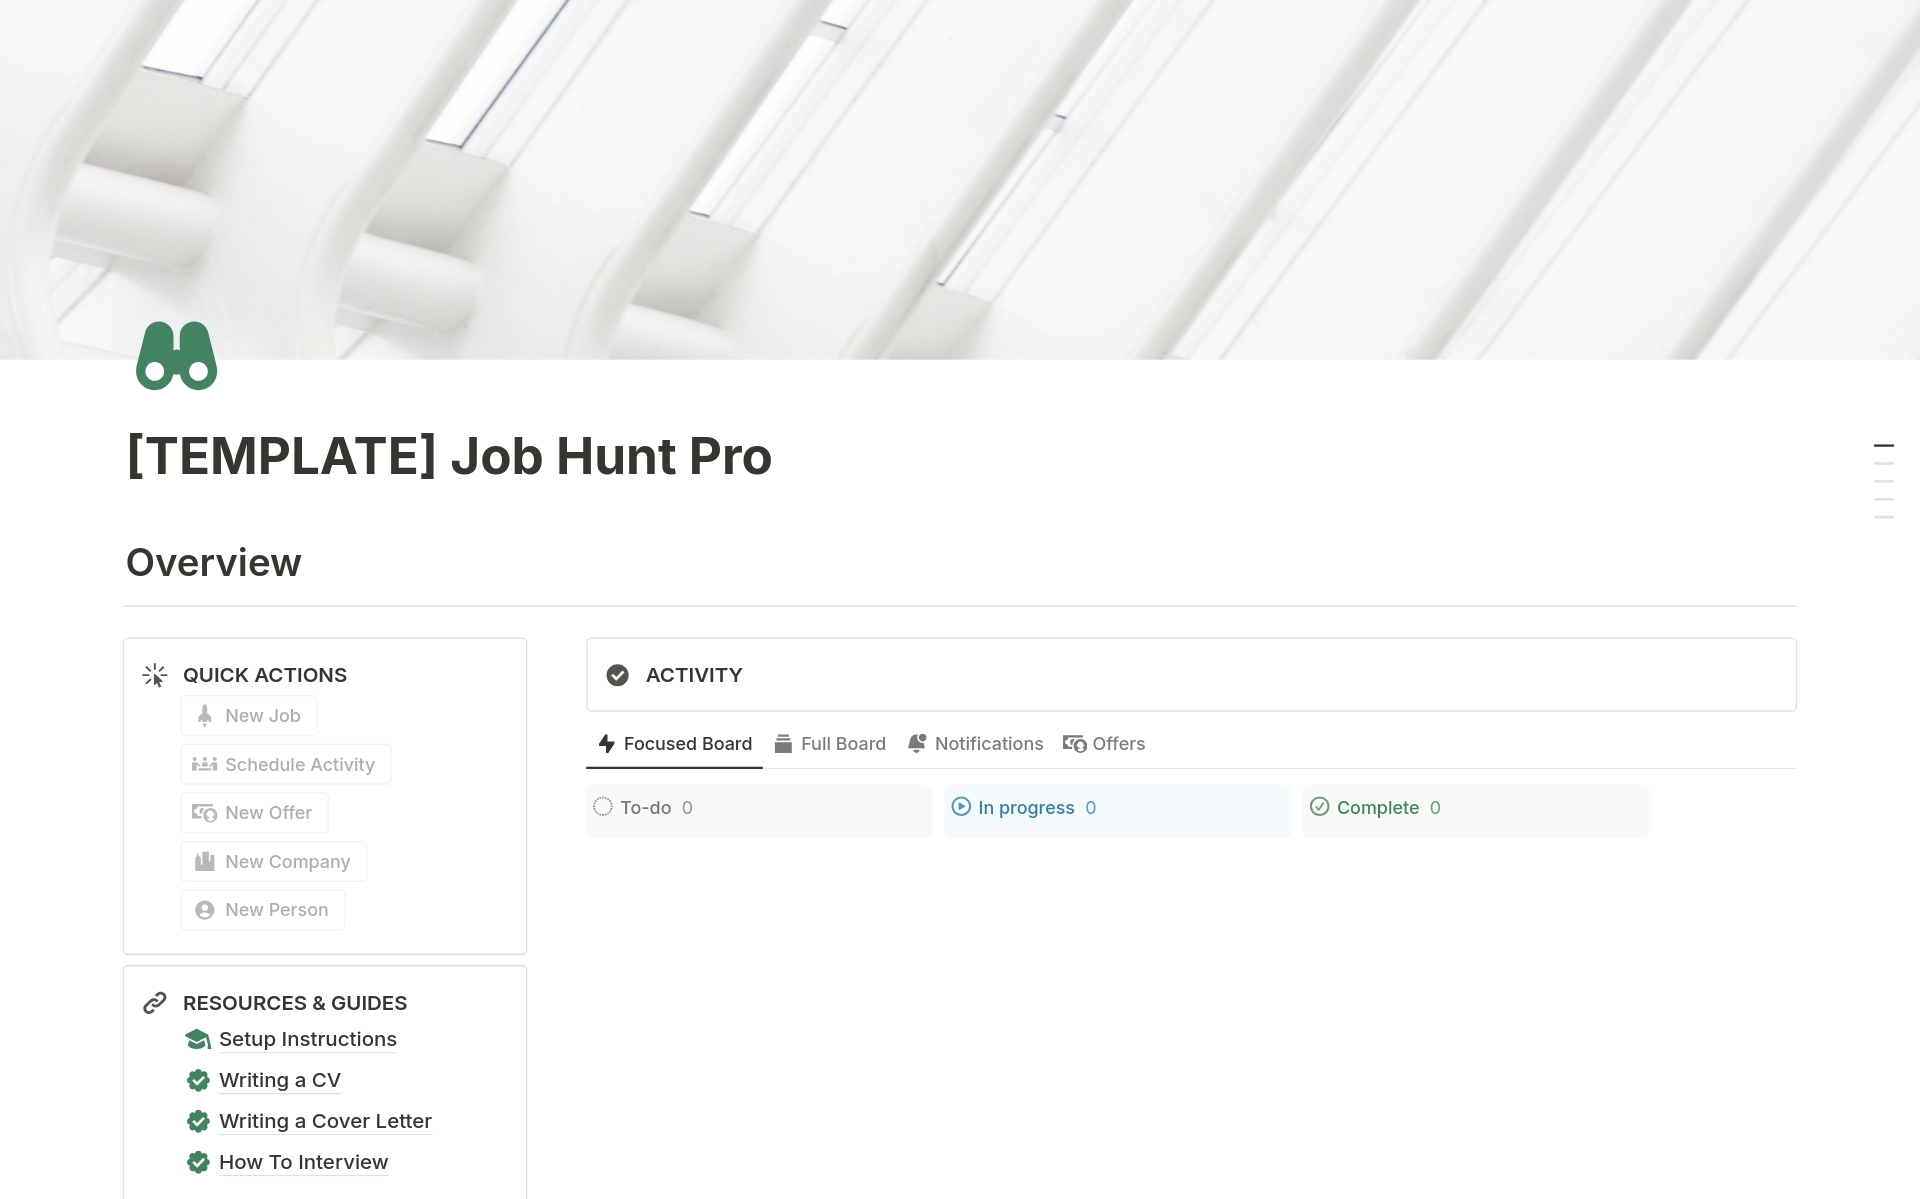 Vista previa de plantilla para Job Hunt Pro